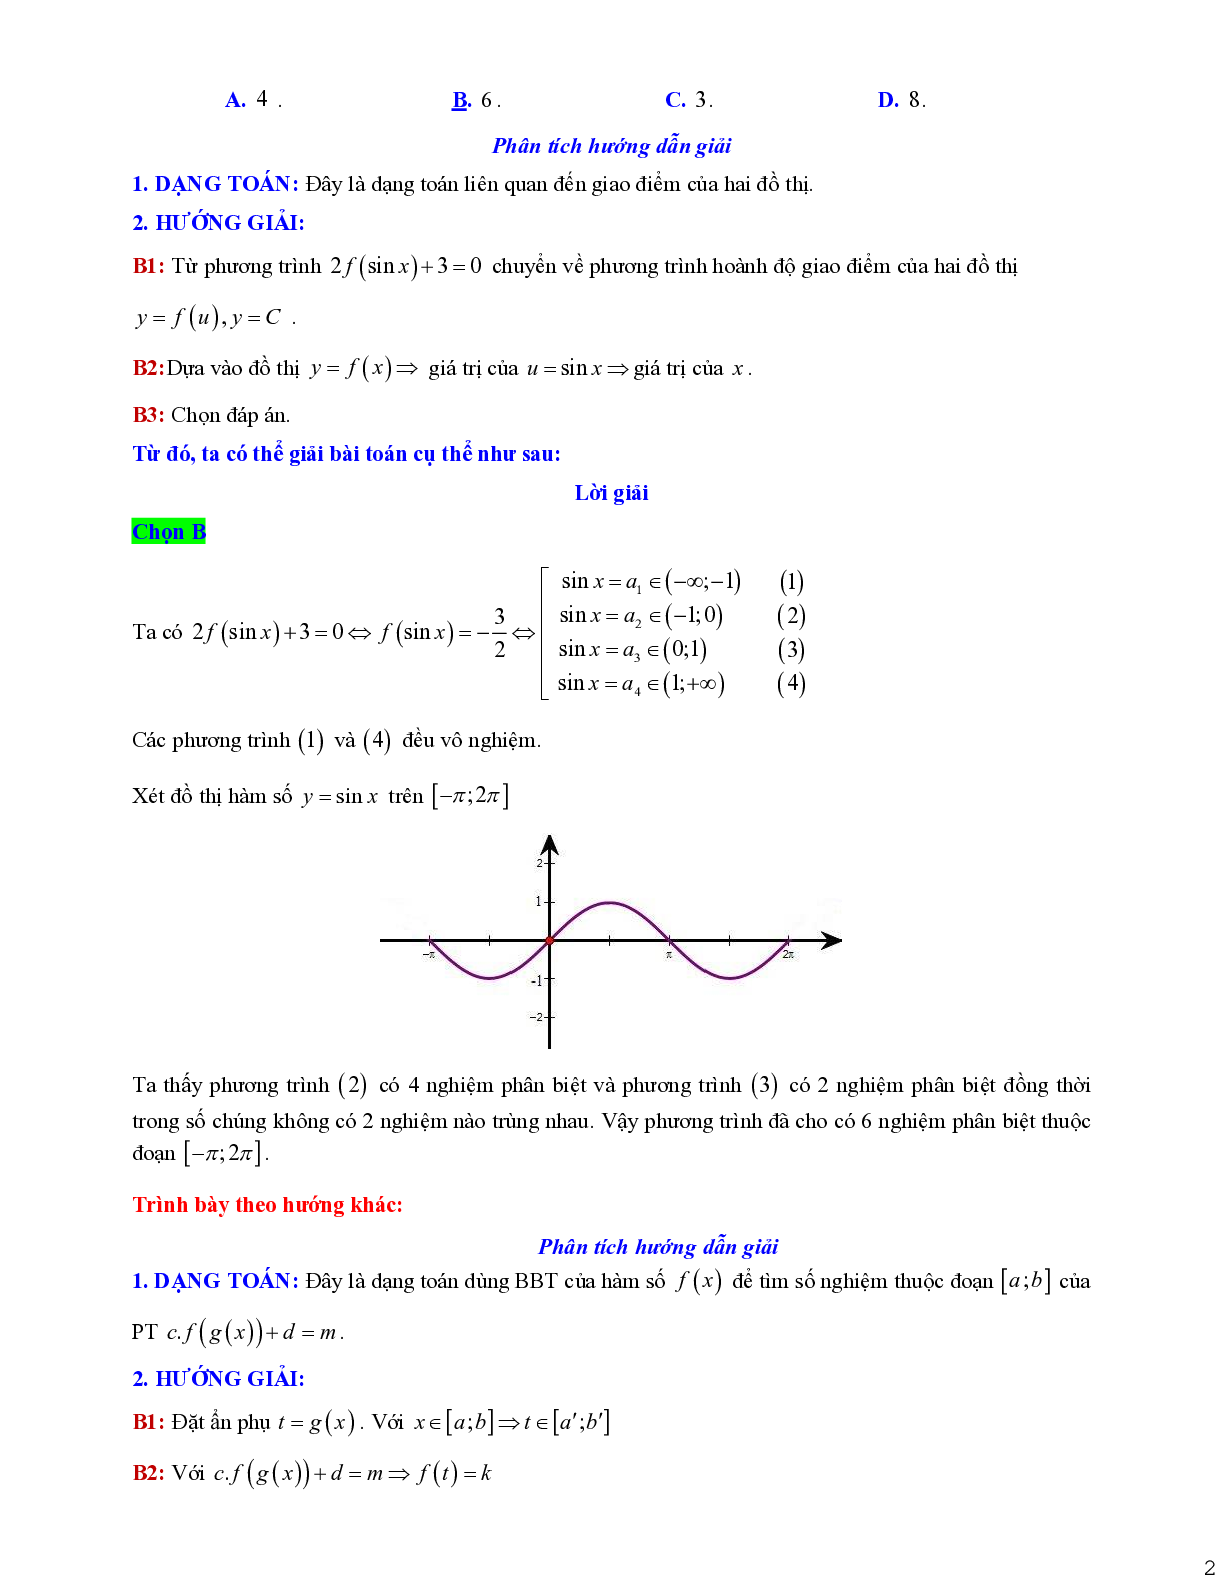 Dạng toán liên quan tới giao điểm của hai đồ thị (trang 2)